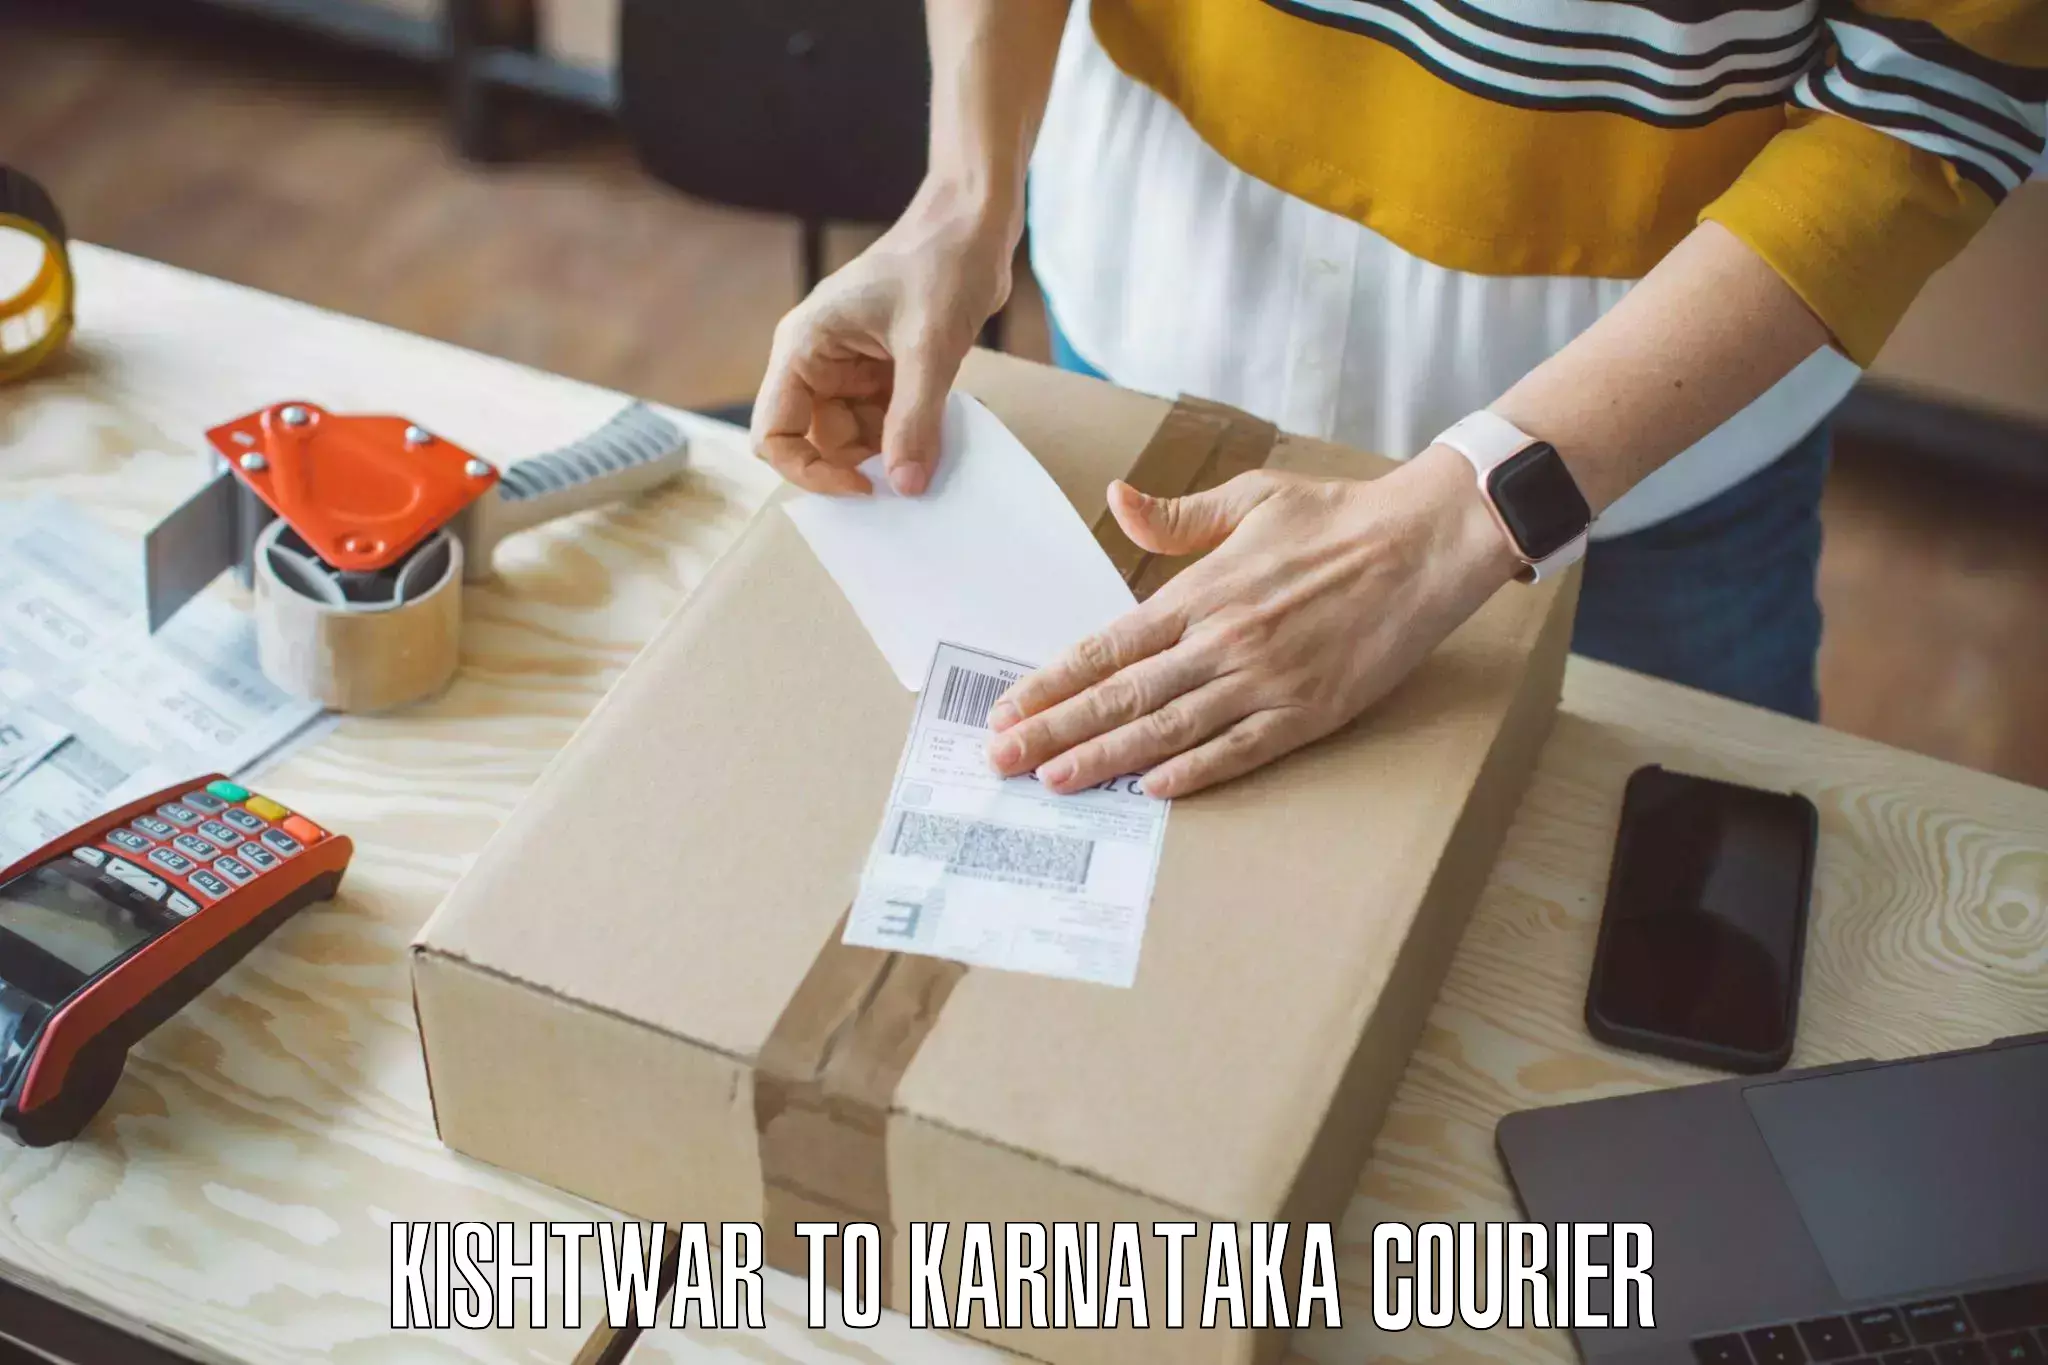 Reliable movers Kishtwar to Karnataka